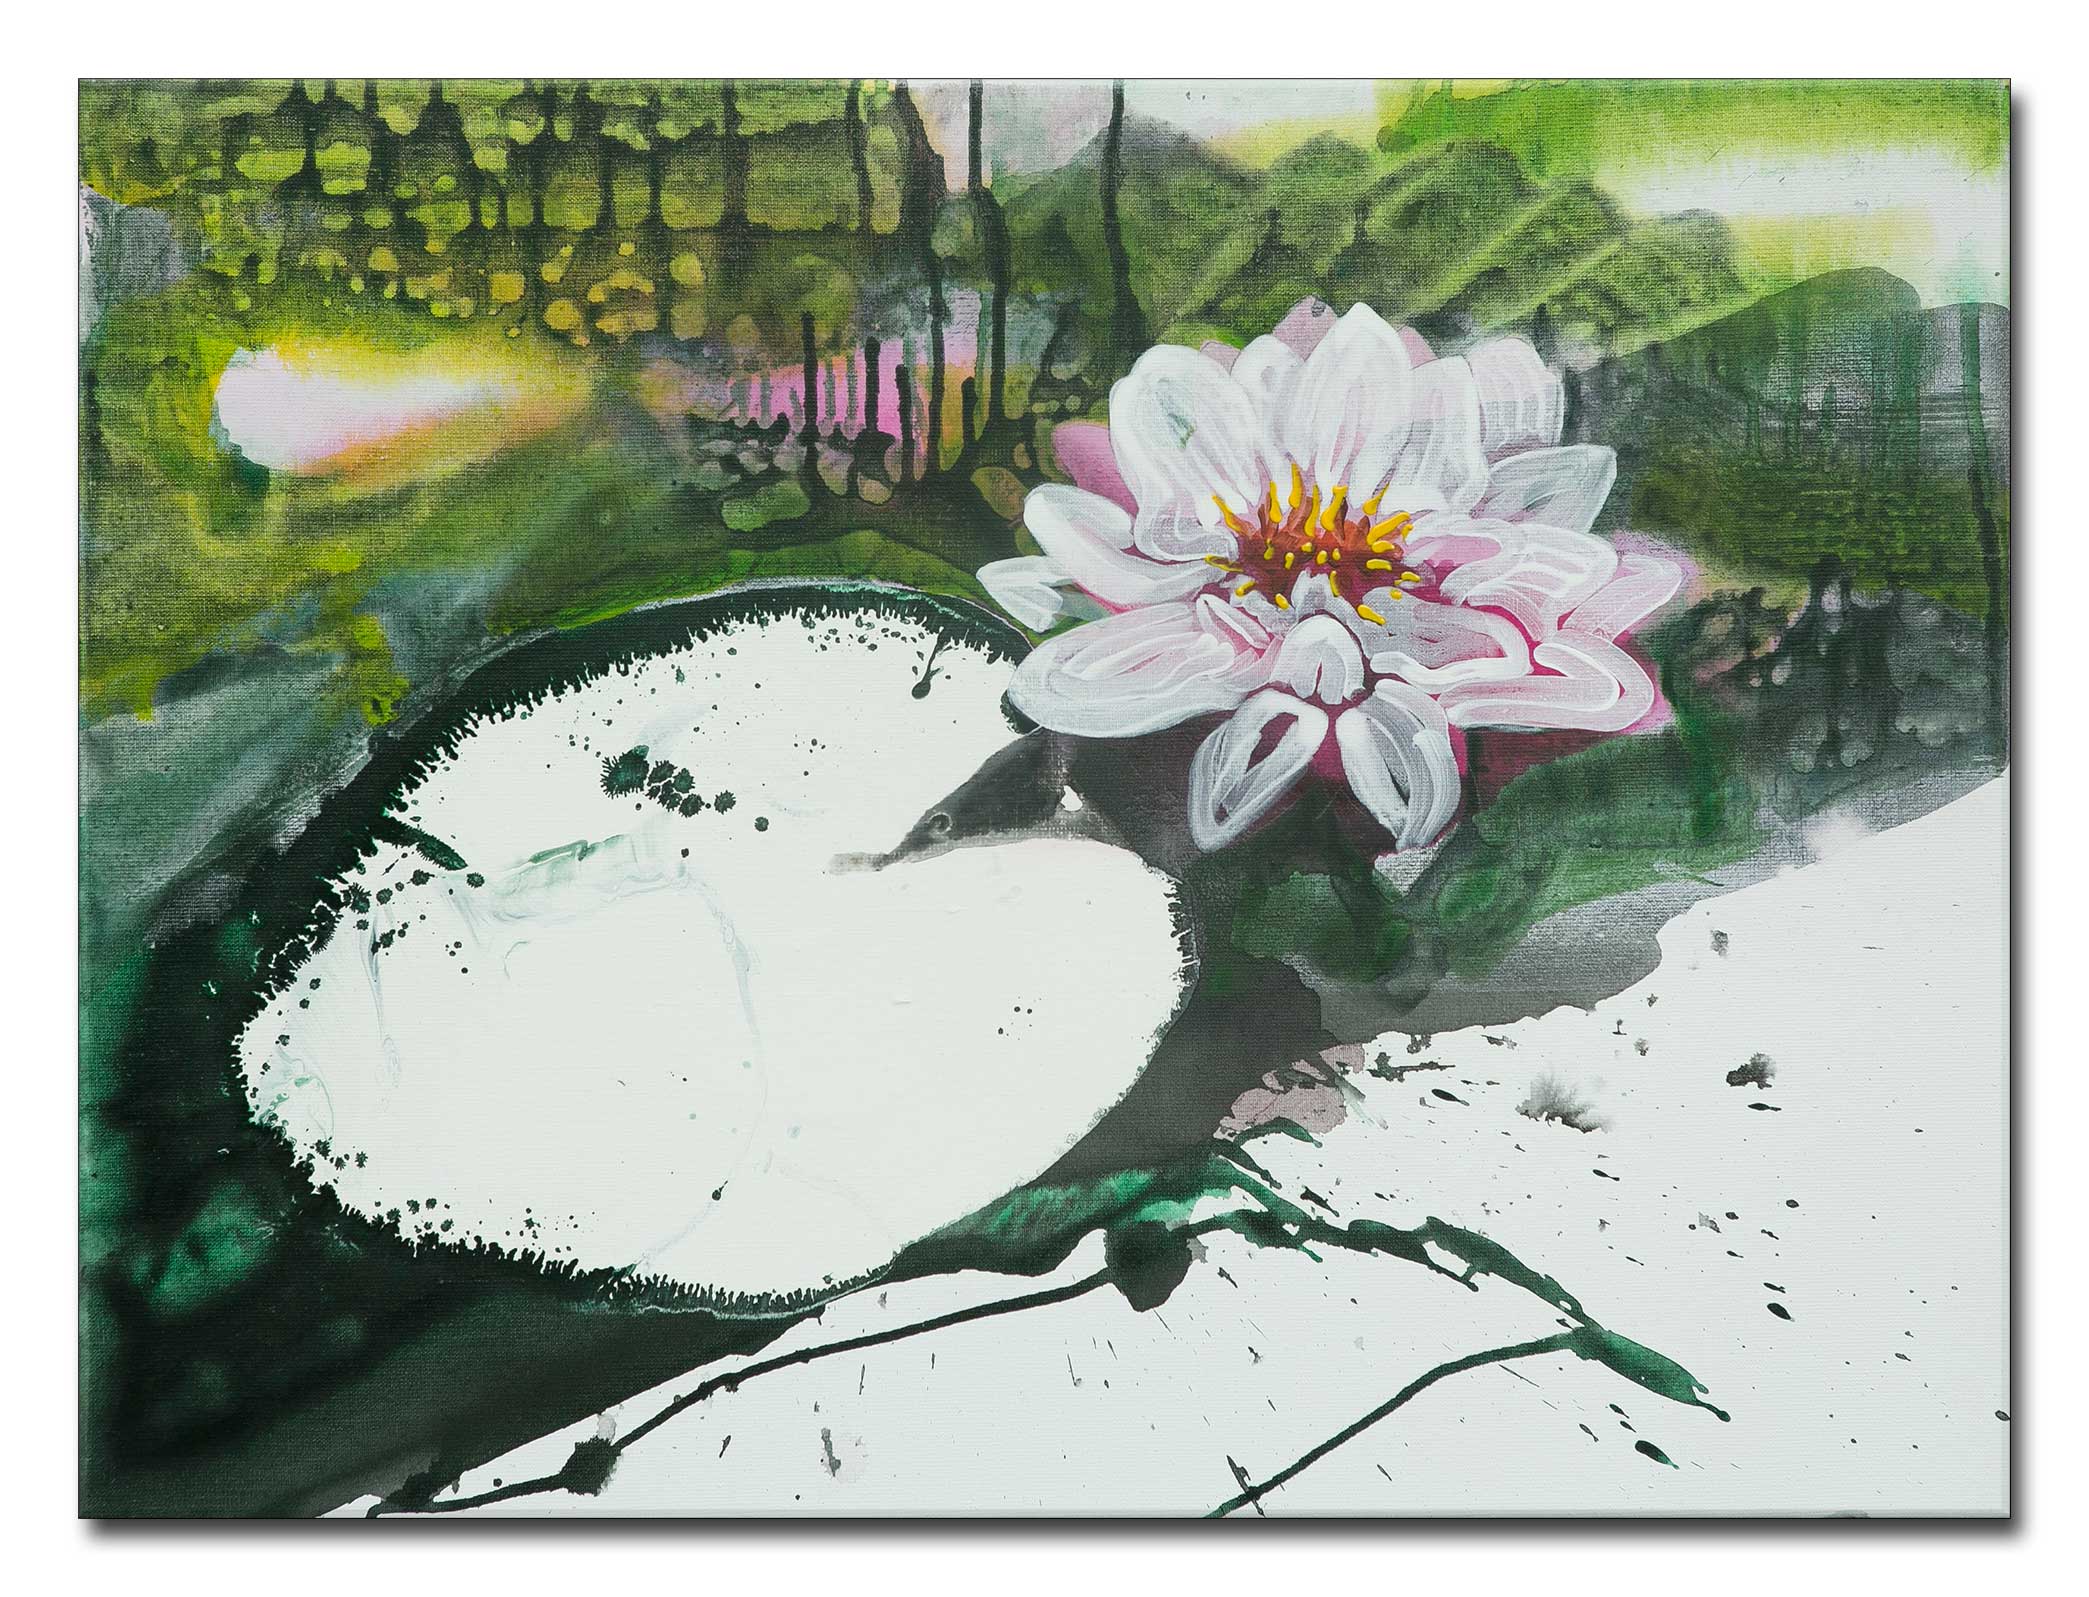 Waterlelie’s geïnspireerd door Monet, Waterlillies inspired by Monet